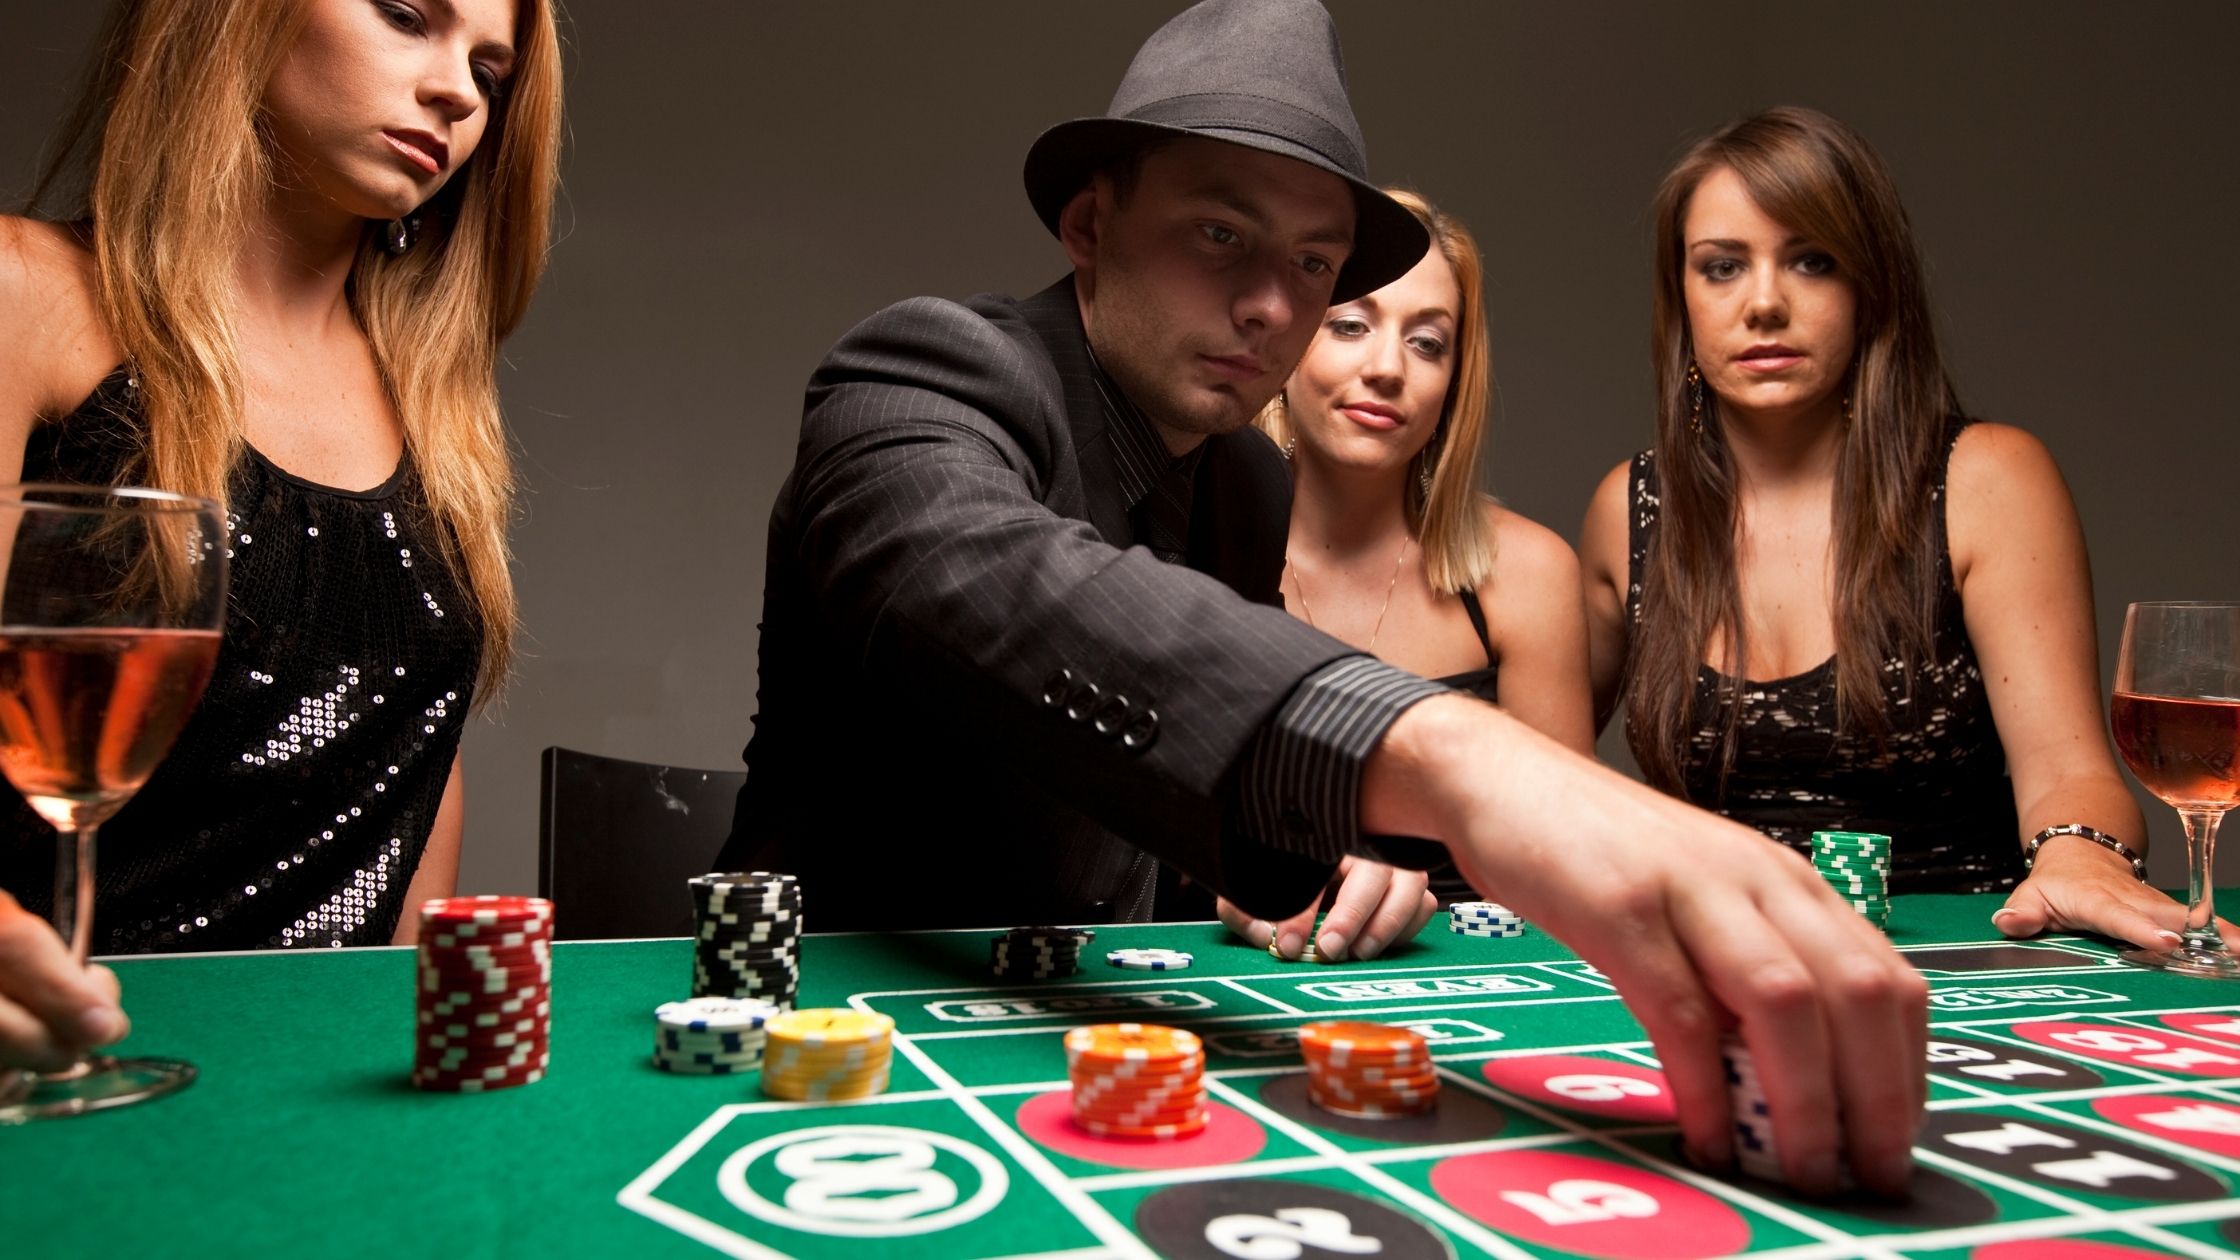 Поиграли в карты на раздевание. Казино Покер. Фотосессия в казино. Девушка за покерным столом. Люди в казино.